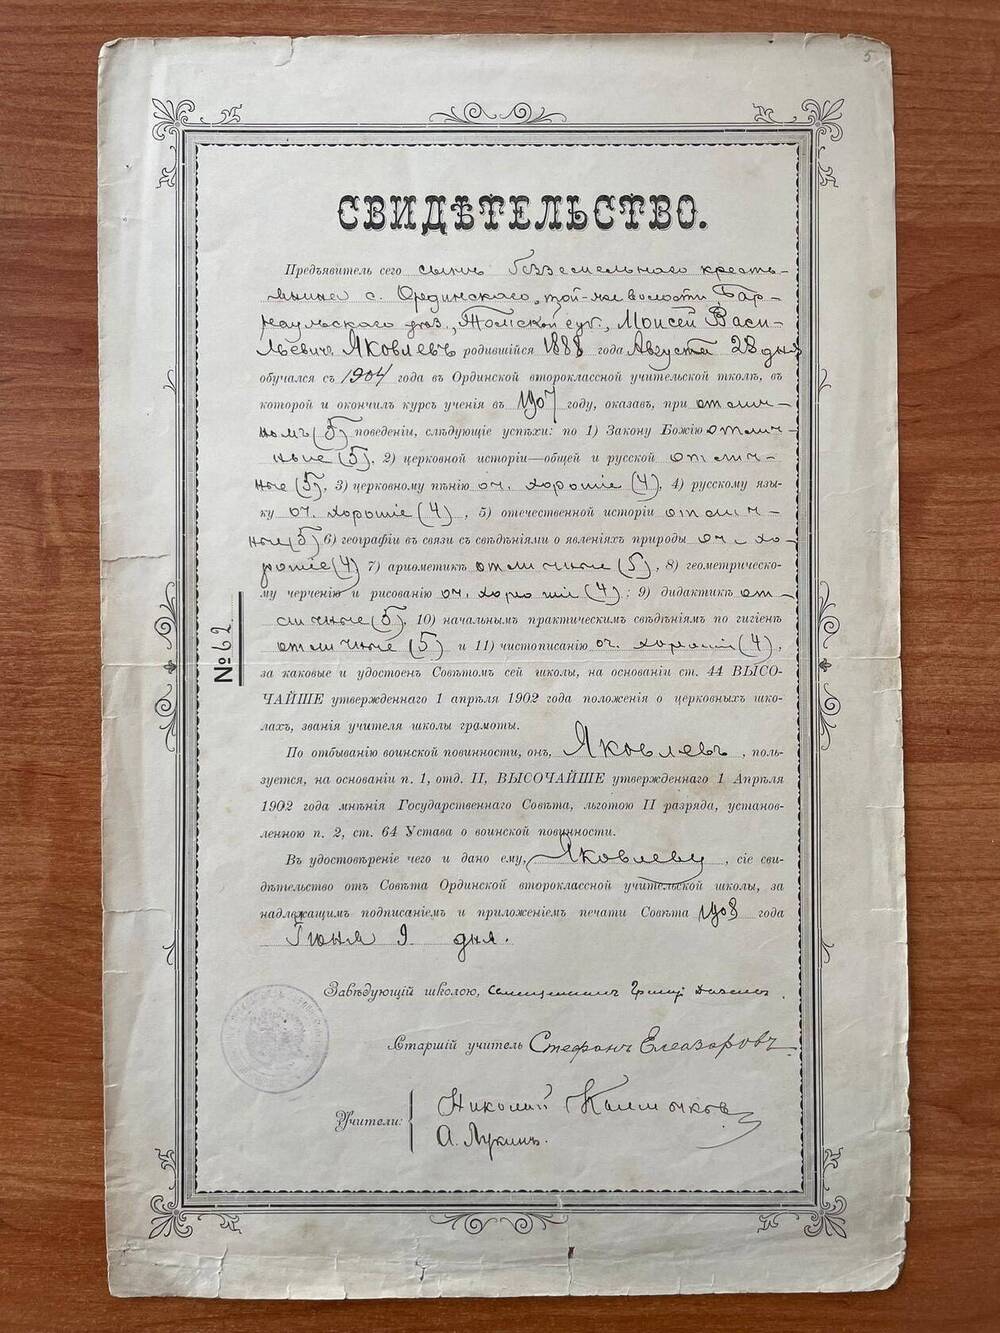 Свидетельство №62 от 9 июня 1908 г. в том, что Яковлев Моисей Васильевич с 1904 года обучался в Ординской второклассной учительской школе и удостоен звания учителя шолы грамоты.